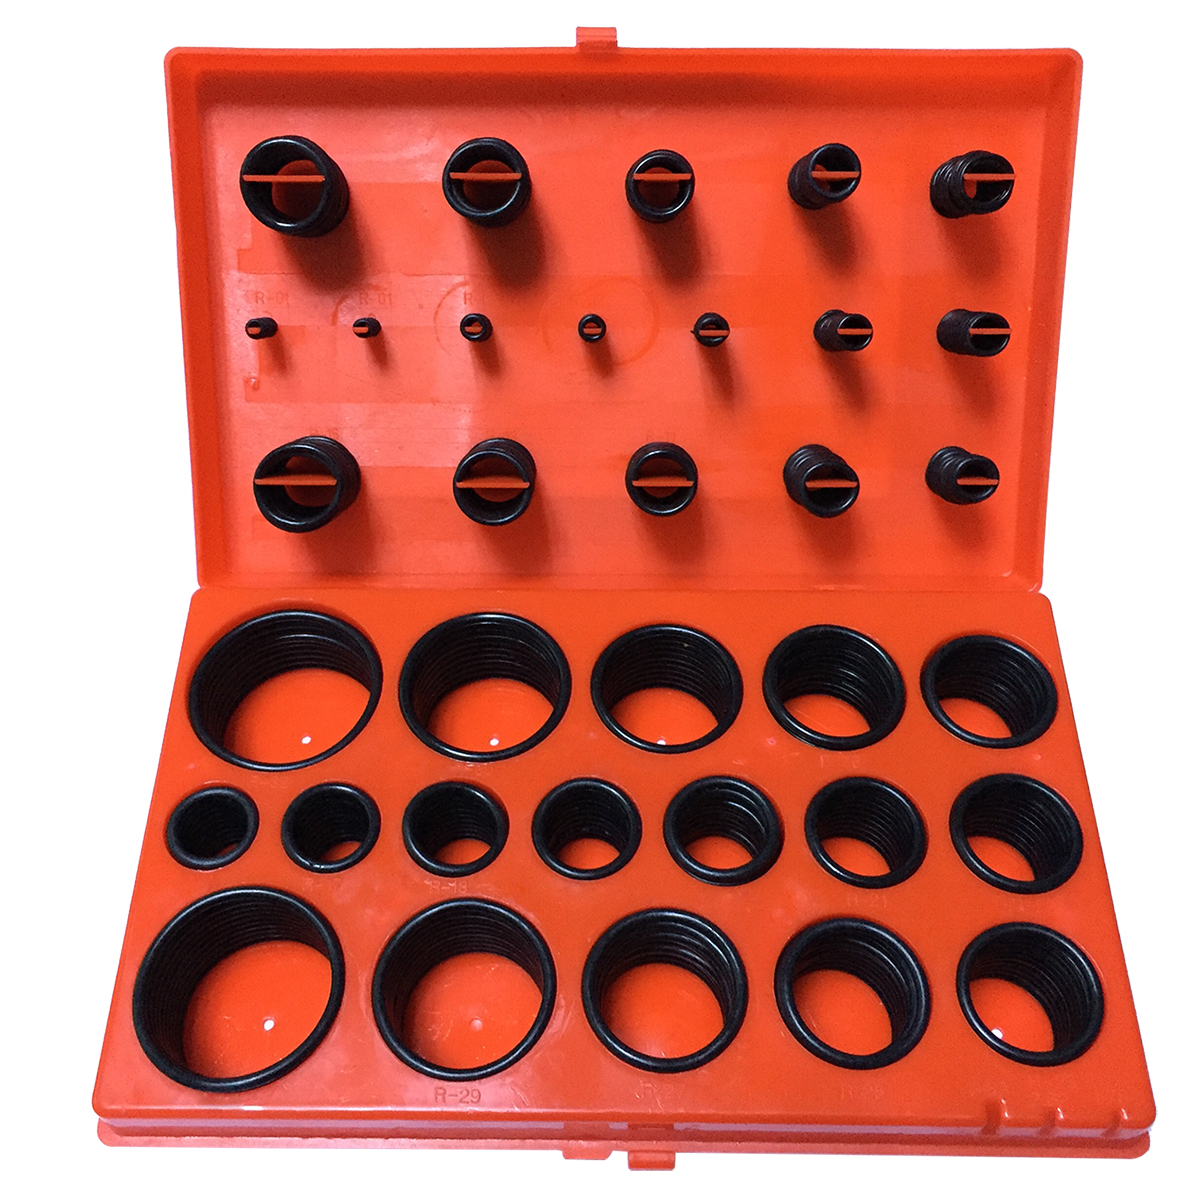 419 Rubber O Ring Seal Plumbing Garage Set Kit with Case - Red